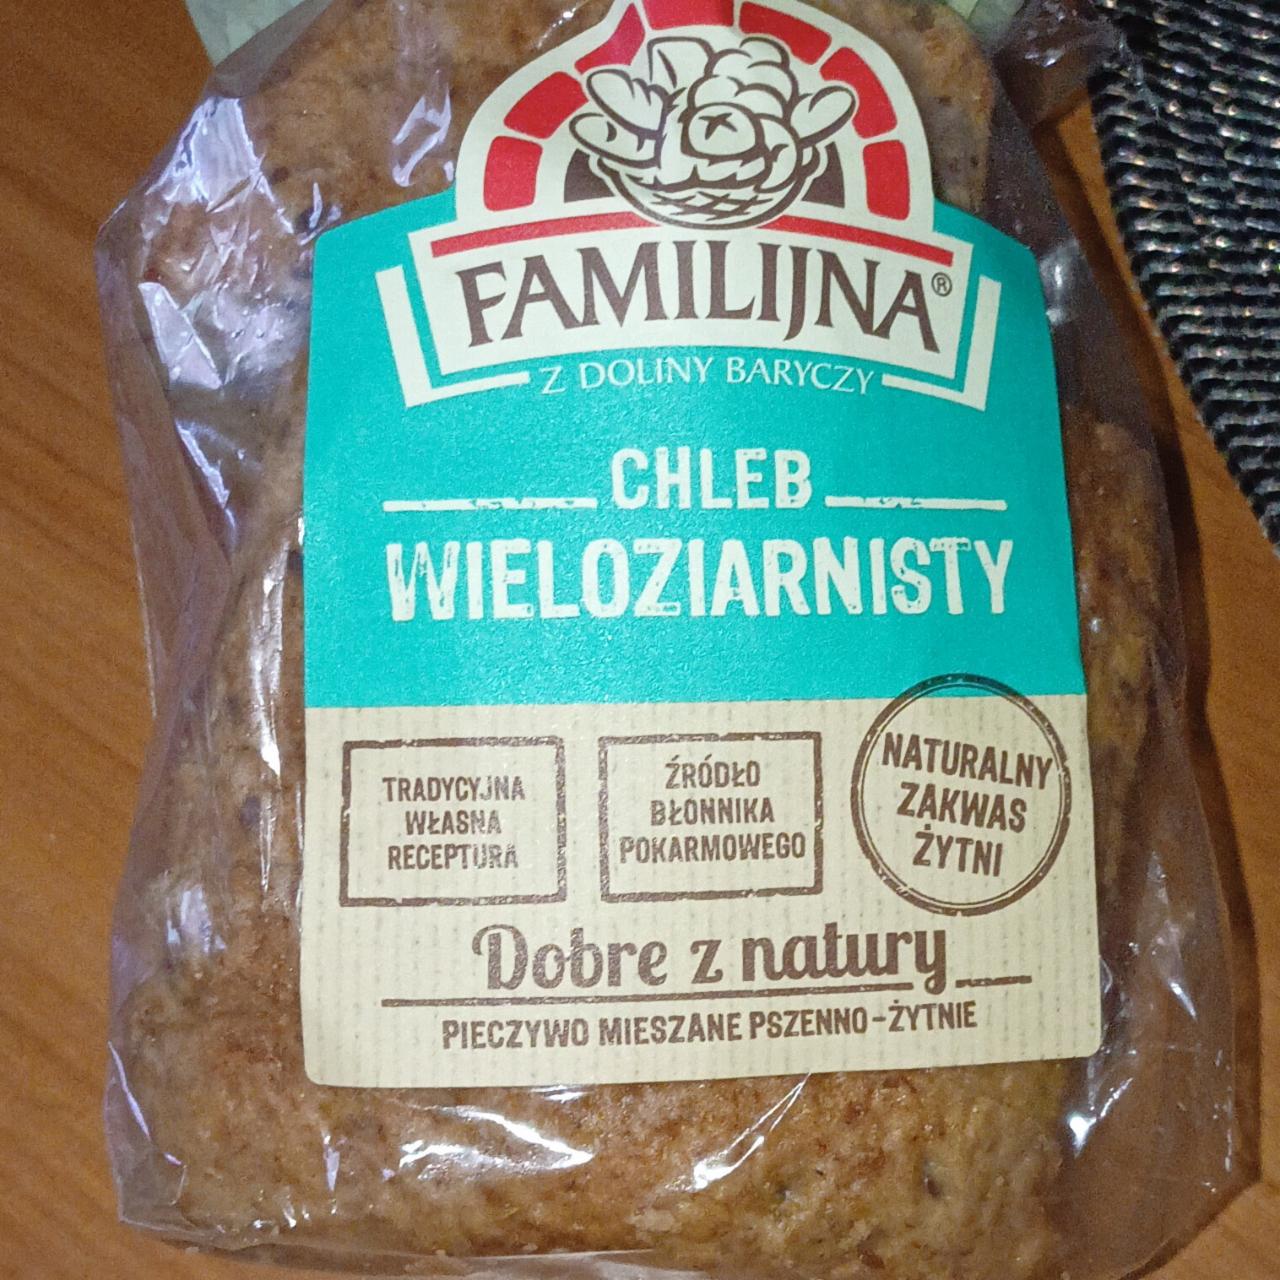 Фото - хлеб ржаной цельнозерновой Familijna